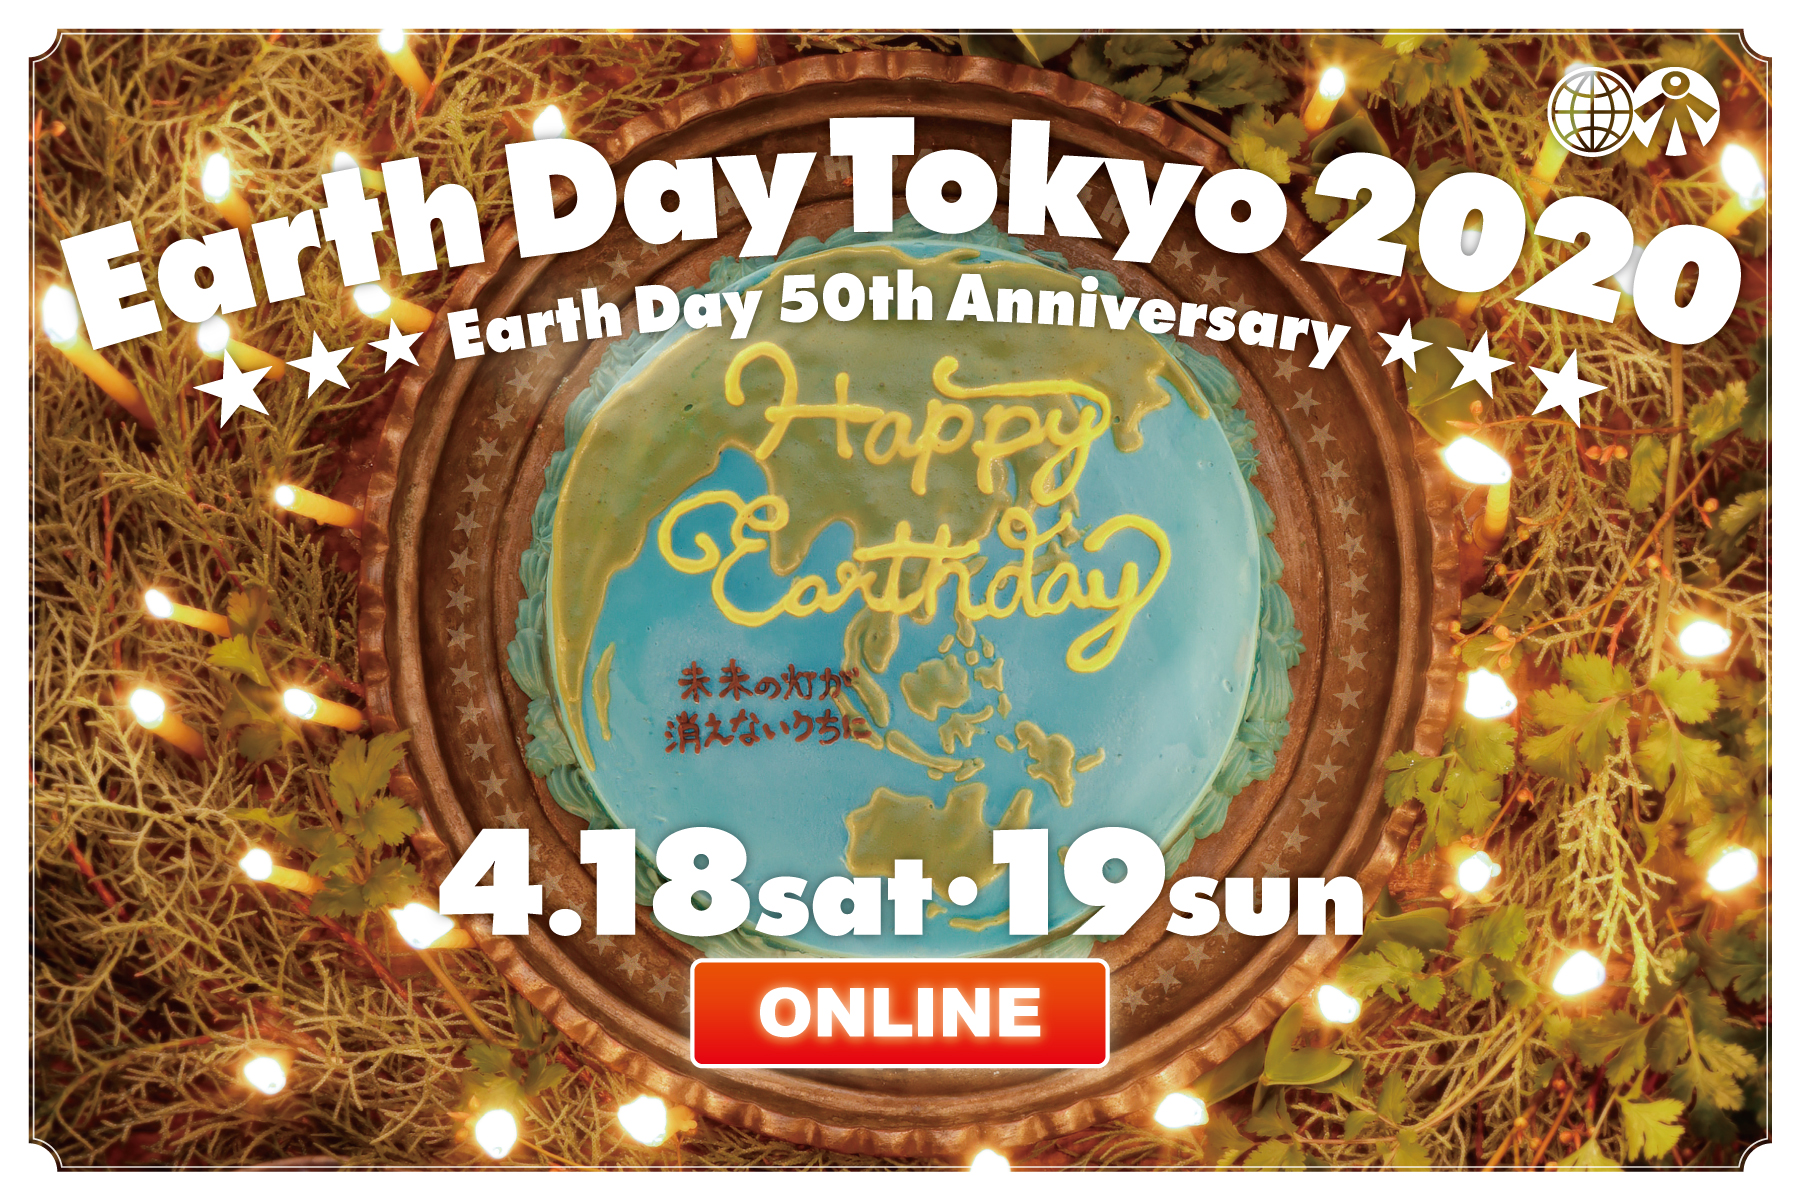 アースデイ東京2020 オンライン開催バナー